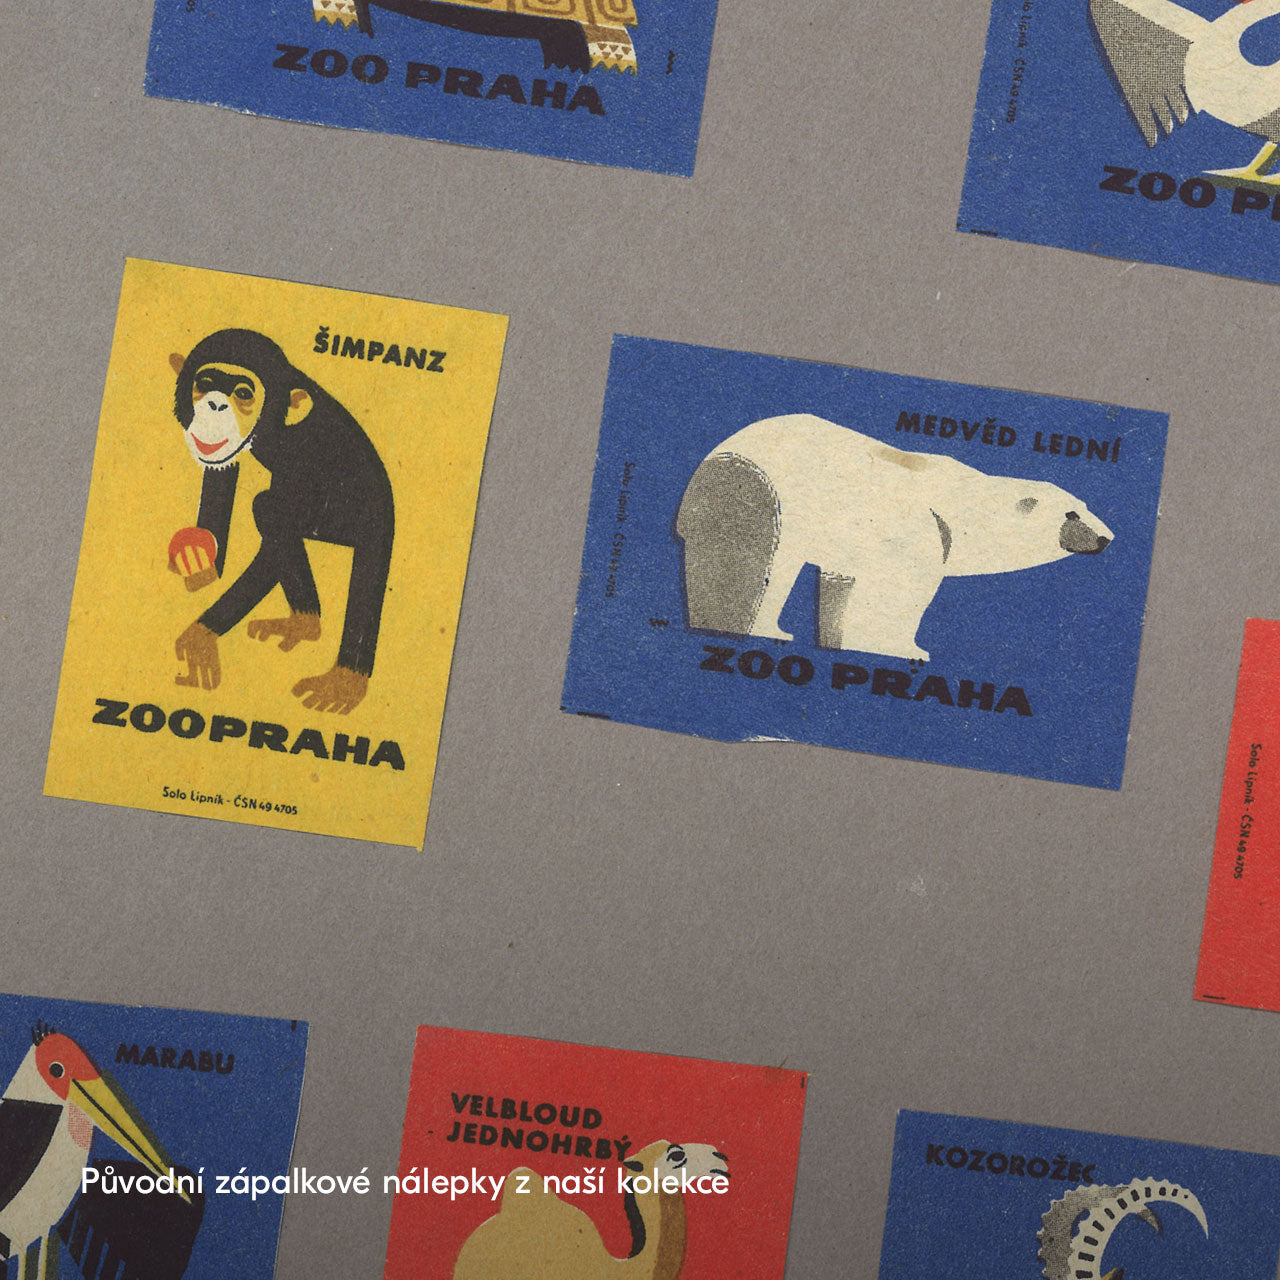 Prague Zoo - Chimpanzee - Poster 30x40 cm 